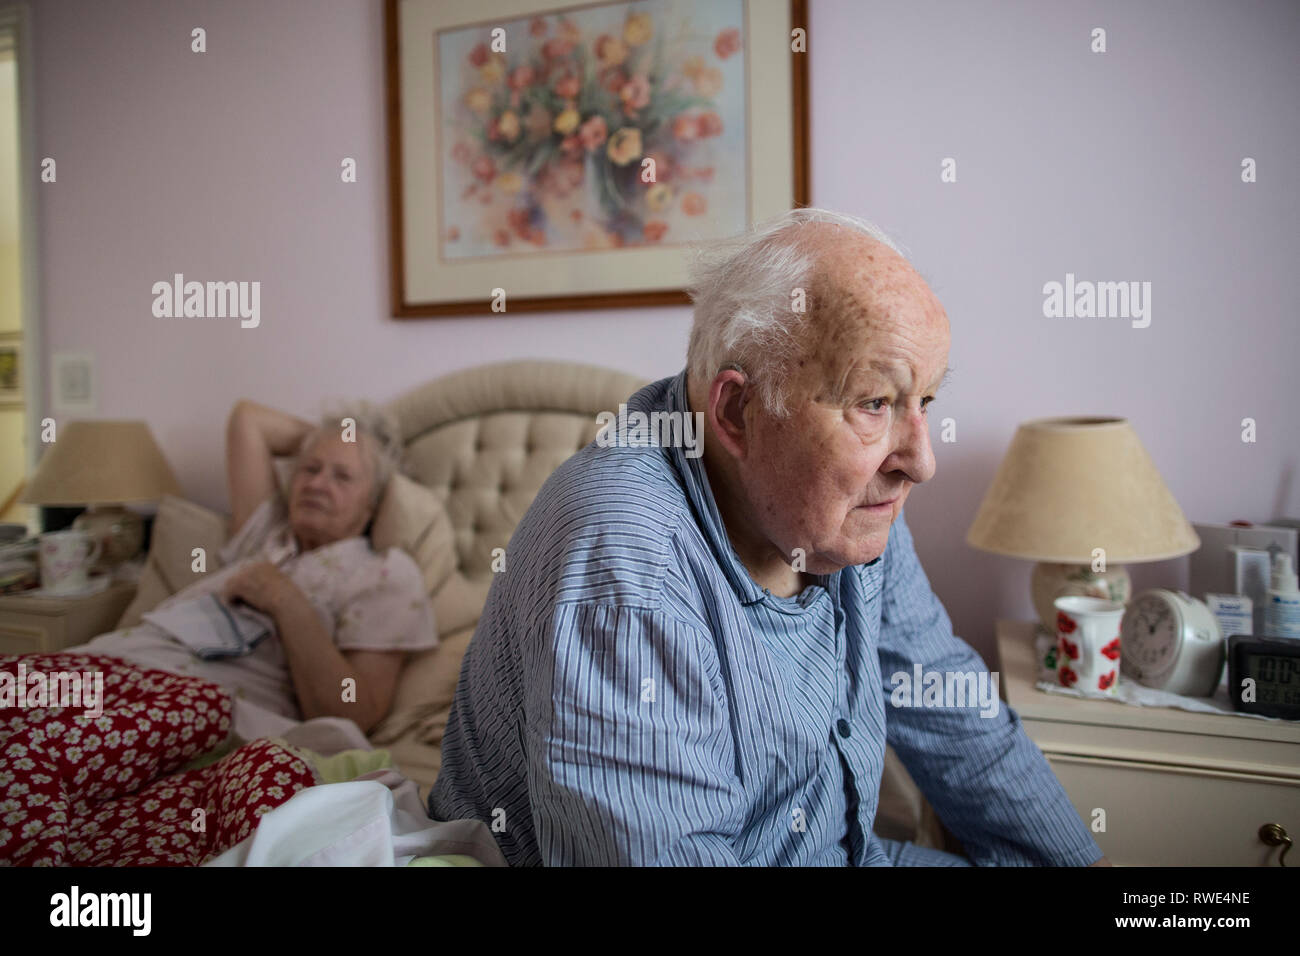 Couple de personnes âgées de plus de 80 ans dans leur chambre à coucher à la maison porter leur pyjama au matin, l'Angleterre, Royaume-Uni Banque D'Images